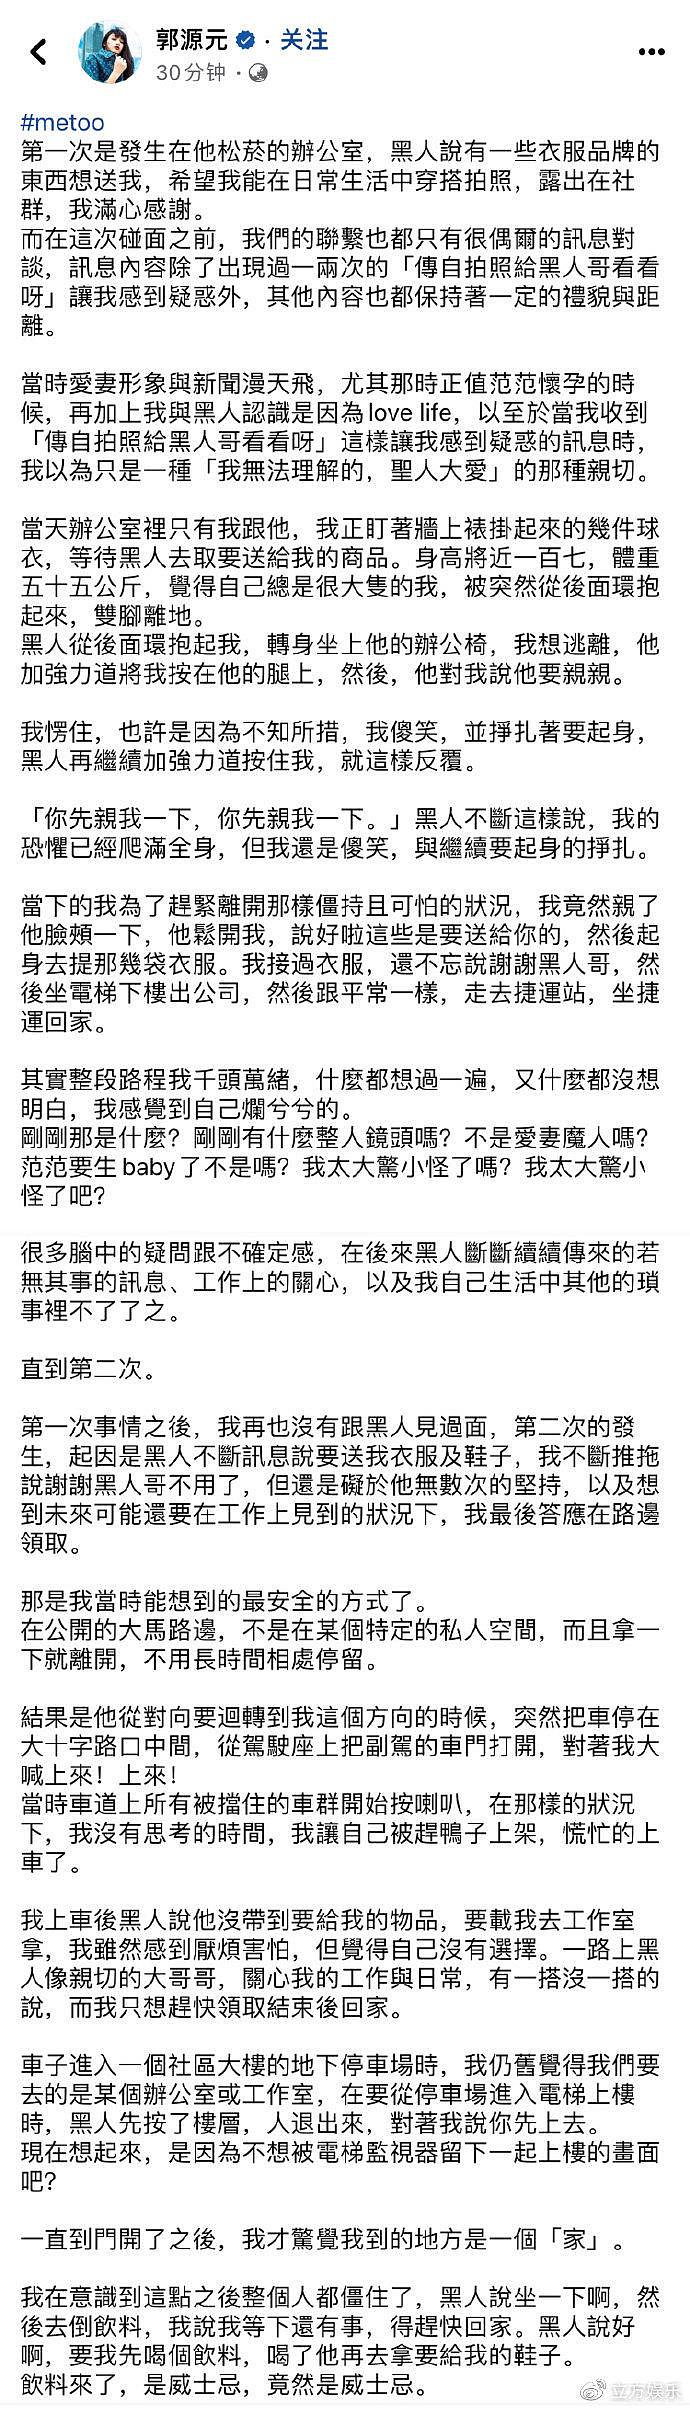 陈建州回应郭源元曝其性骚扰 称不再回应莫须有的指控 - 3